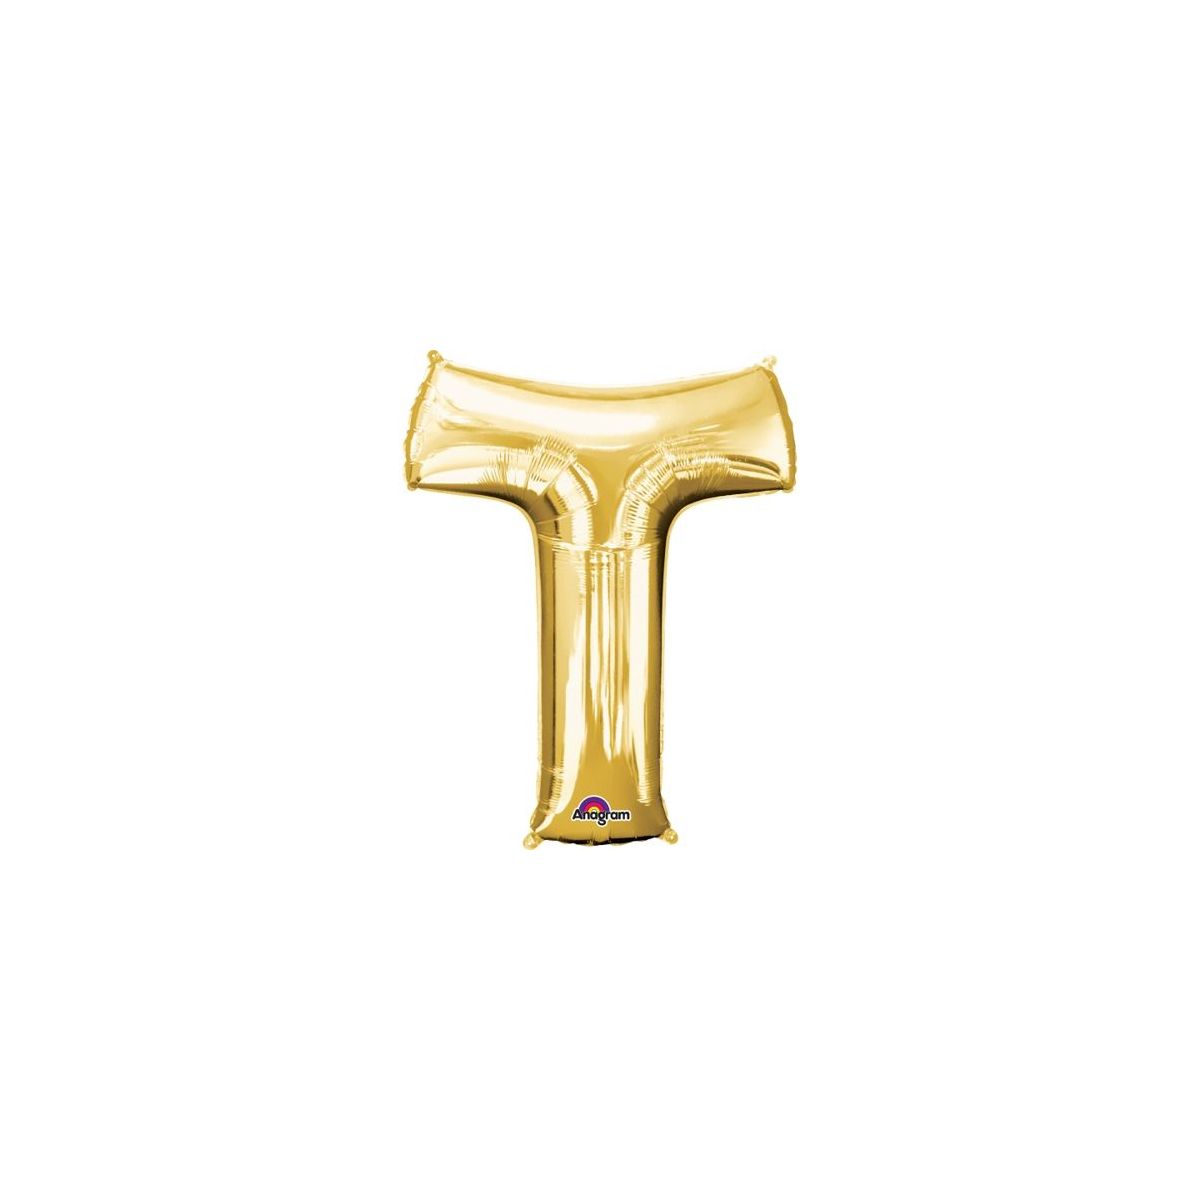 Balon foliowy Amscan mini litera t złota (3305101)